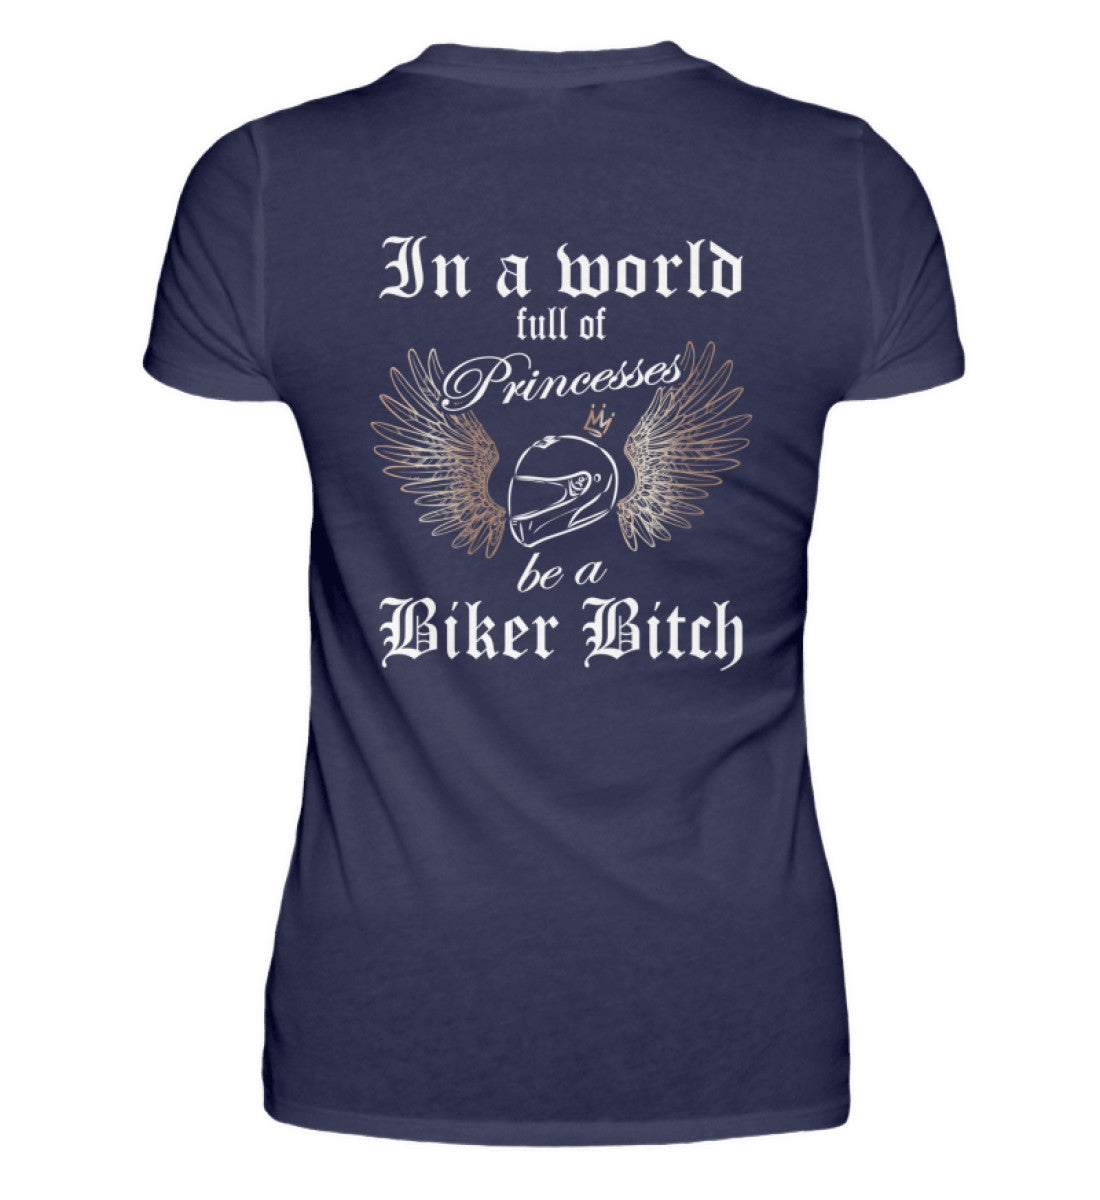 Ein Bikerin T-Shirt für Motorradfahrerinnen von Wingbikers mit dem Aufdruck, In a world full of Princesses, be a Biker Bitch - mit Back Print, in navy blau.